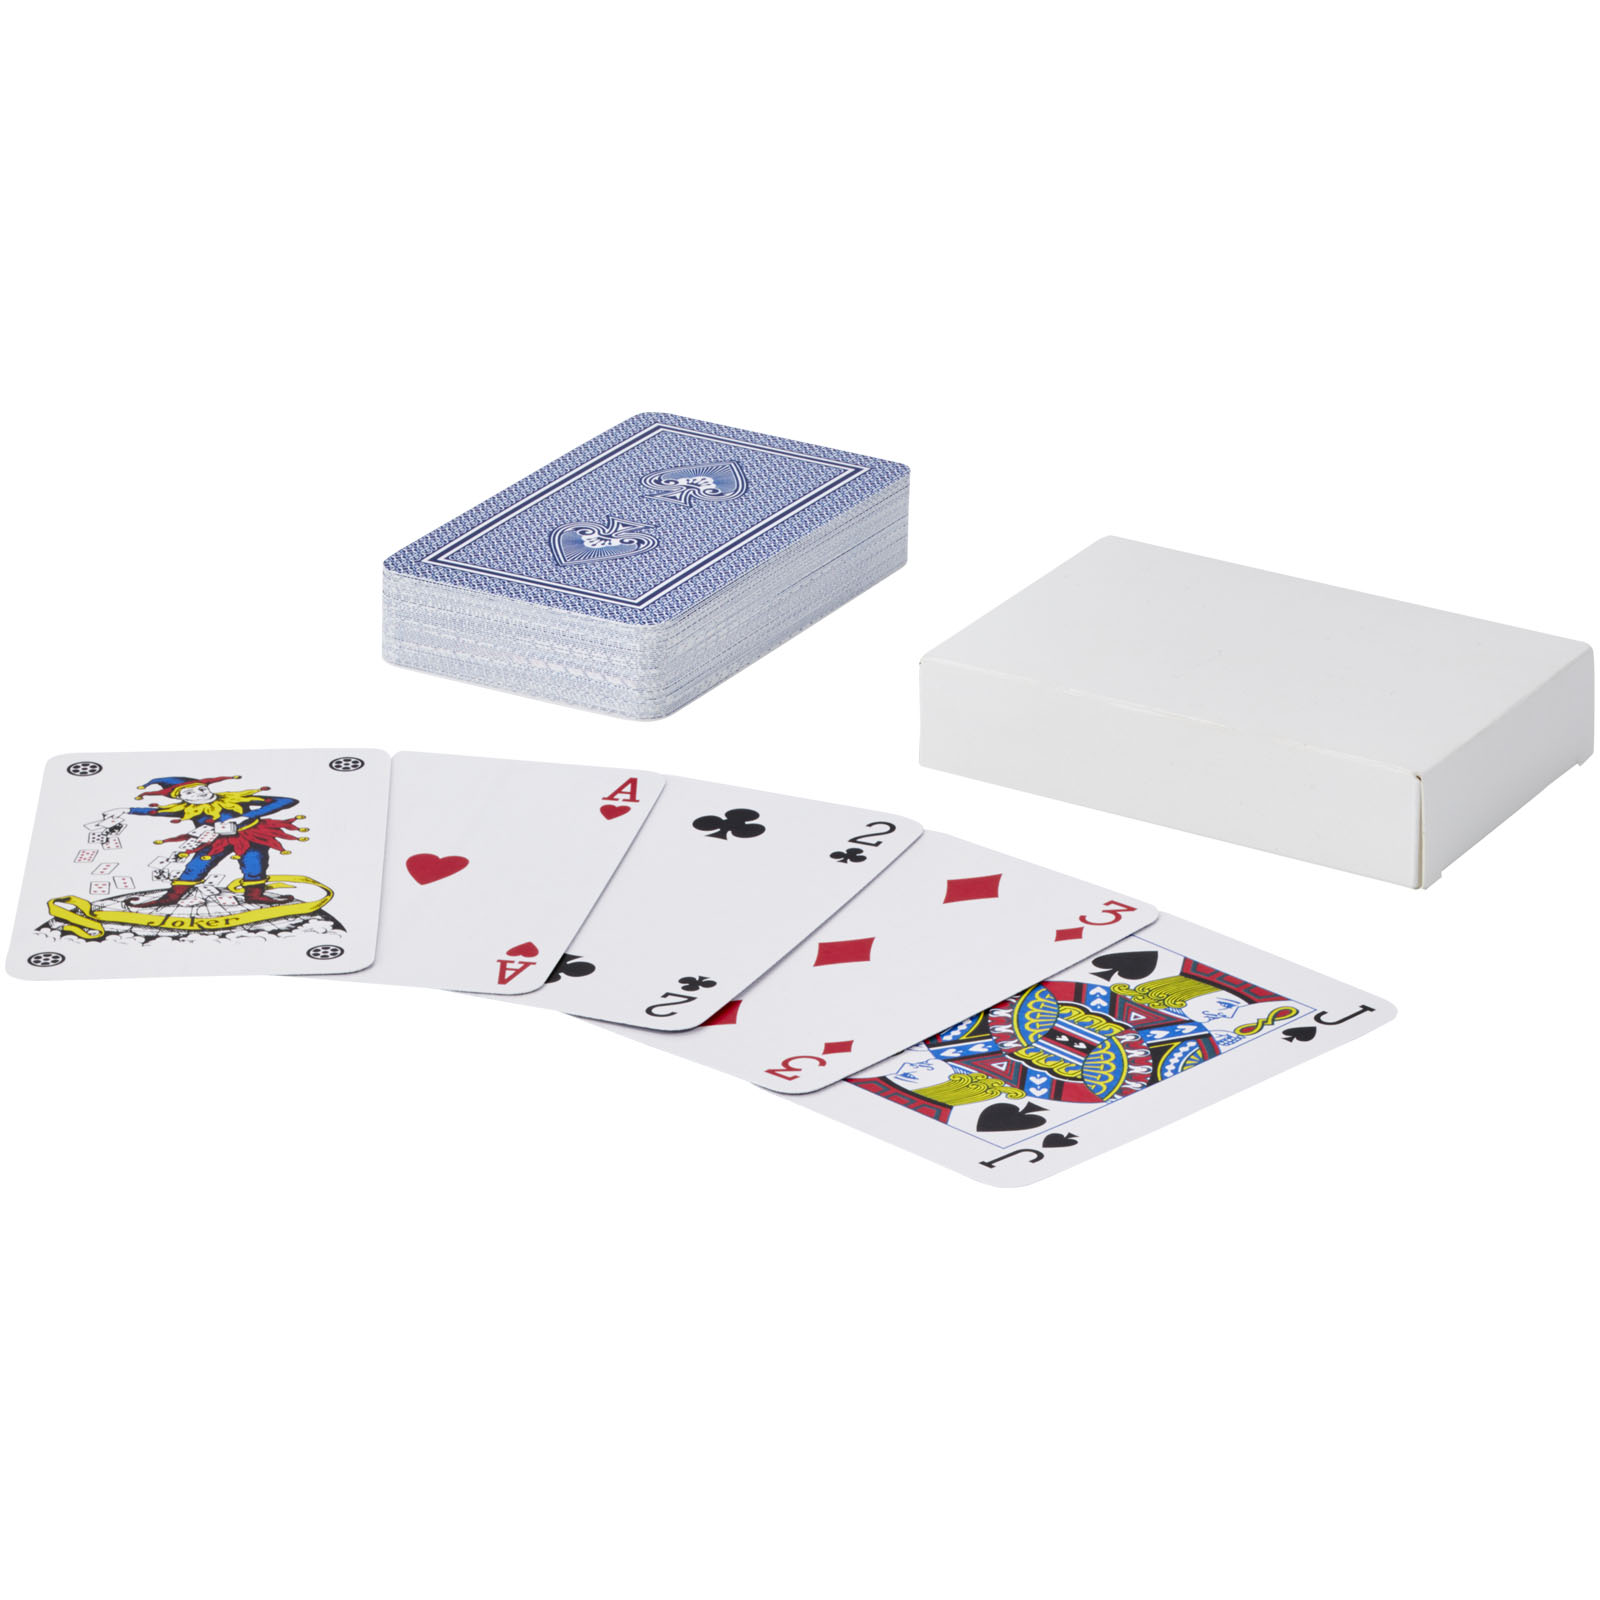 Jeux d'intérieur publicitaires - Ensemble de cartes à jouer Ace - 0